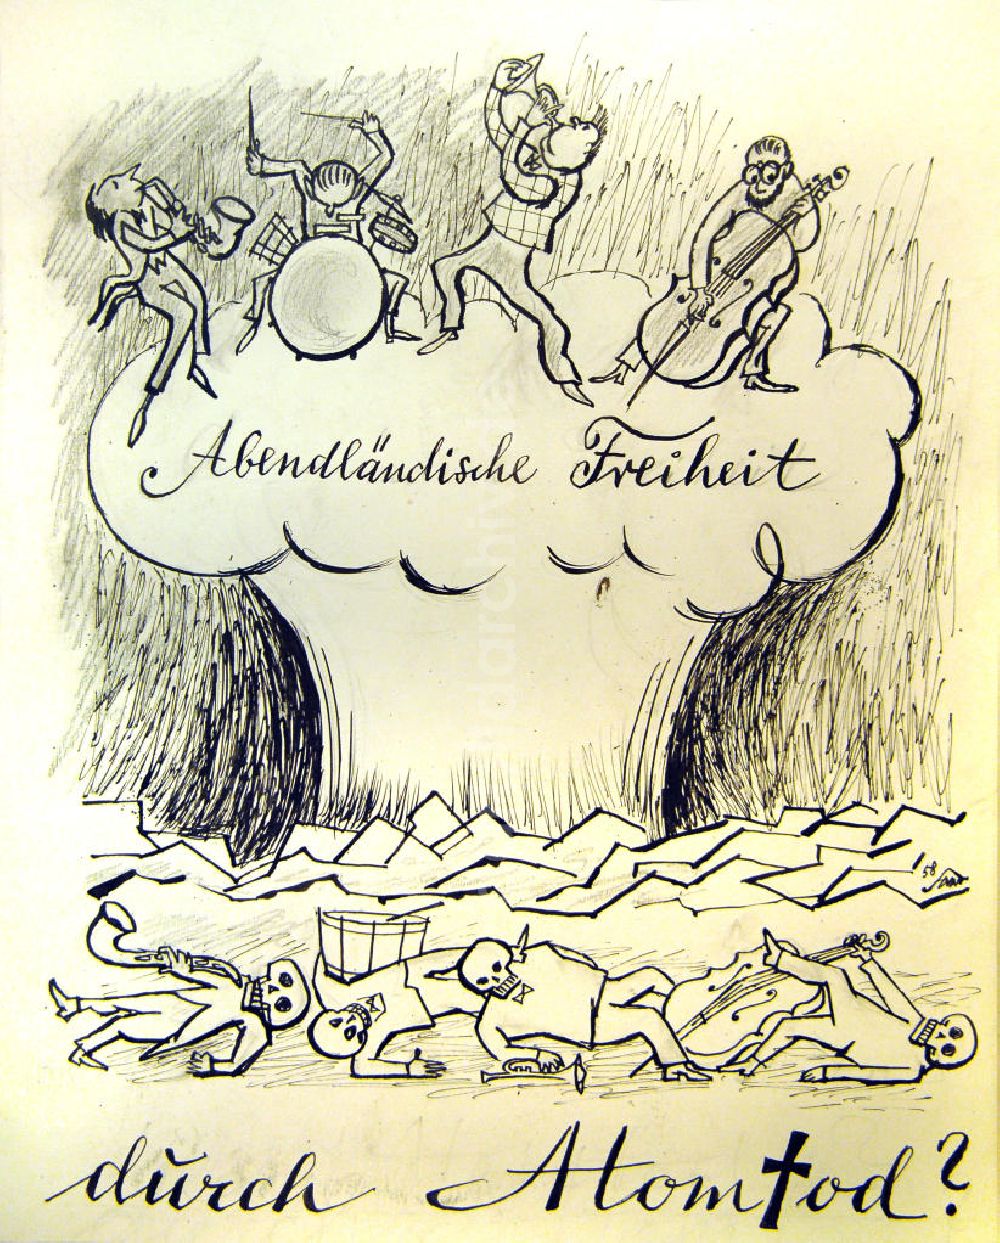 DDR-Bildarchiv: Berlin - Zeichnung von Herbert Sandberg Abendländische Freiheit durch Atomtod? aus dem Jahr 1958